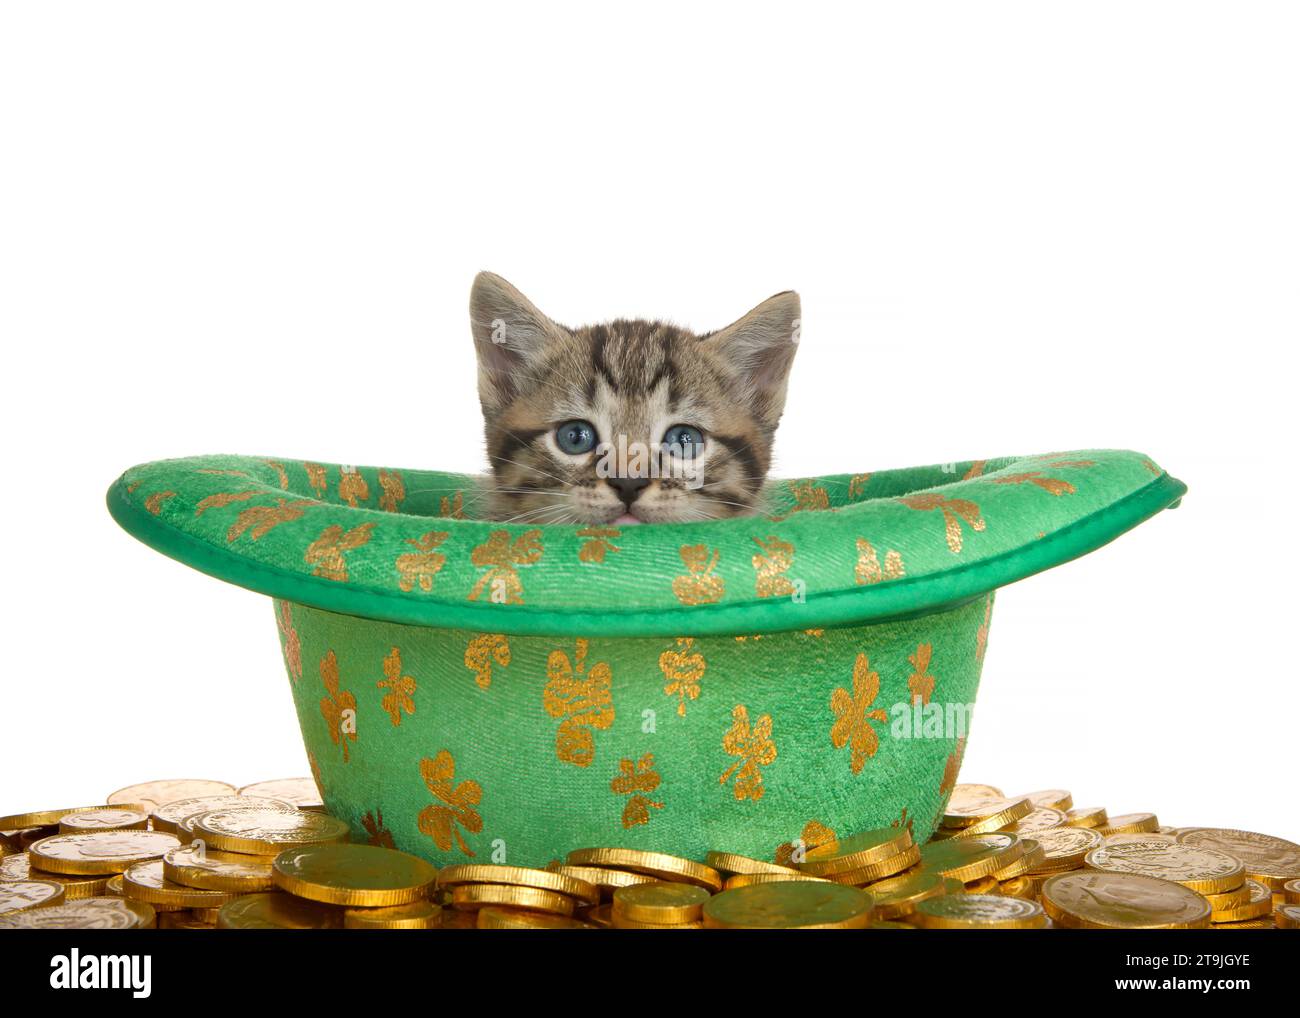 Primo piano di un adorabile gattino tabby che sbircia fuori da un cappello verde a tema San Patrizio con sciamassi d'oro, circondato da monete d'oro. Isolato Foto Stock